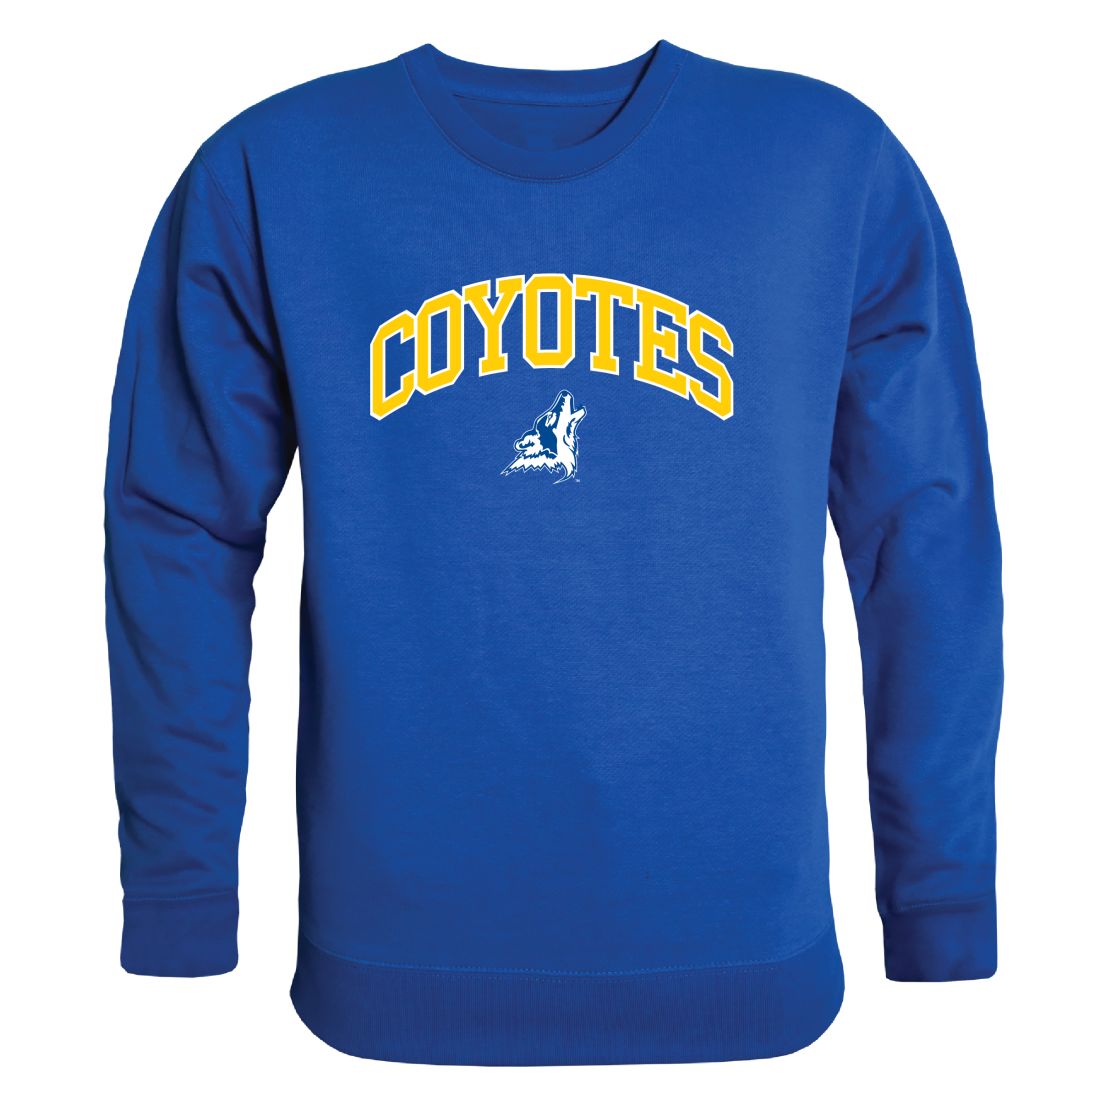 College of Southern Nevada Coyotes Campus Crewneck Sweatshirt